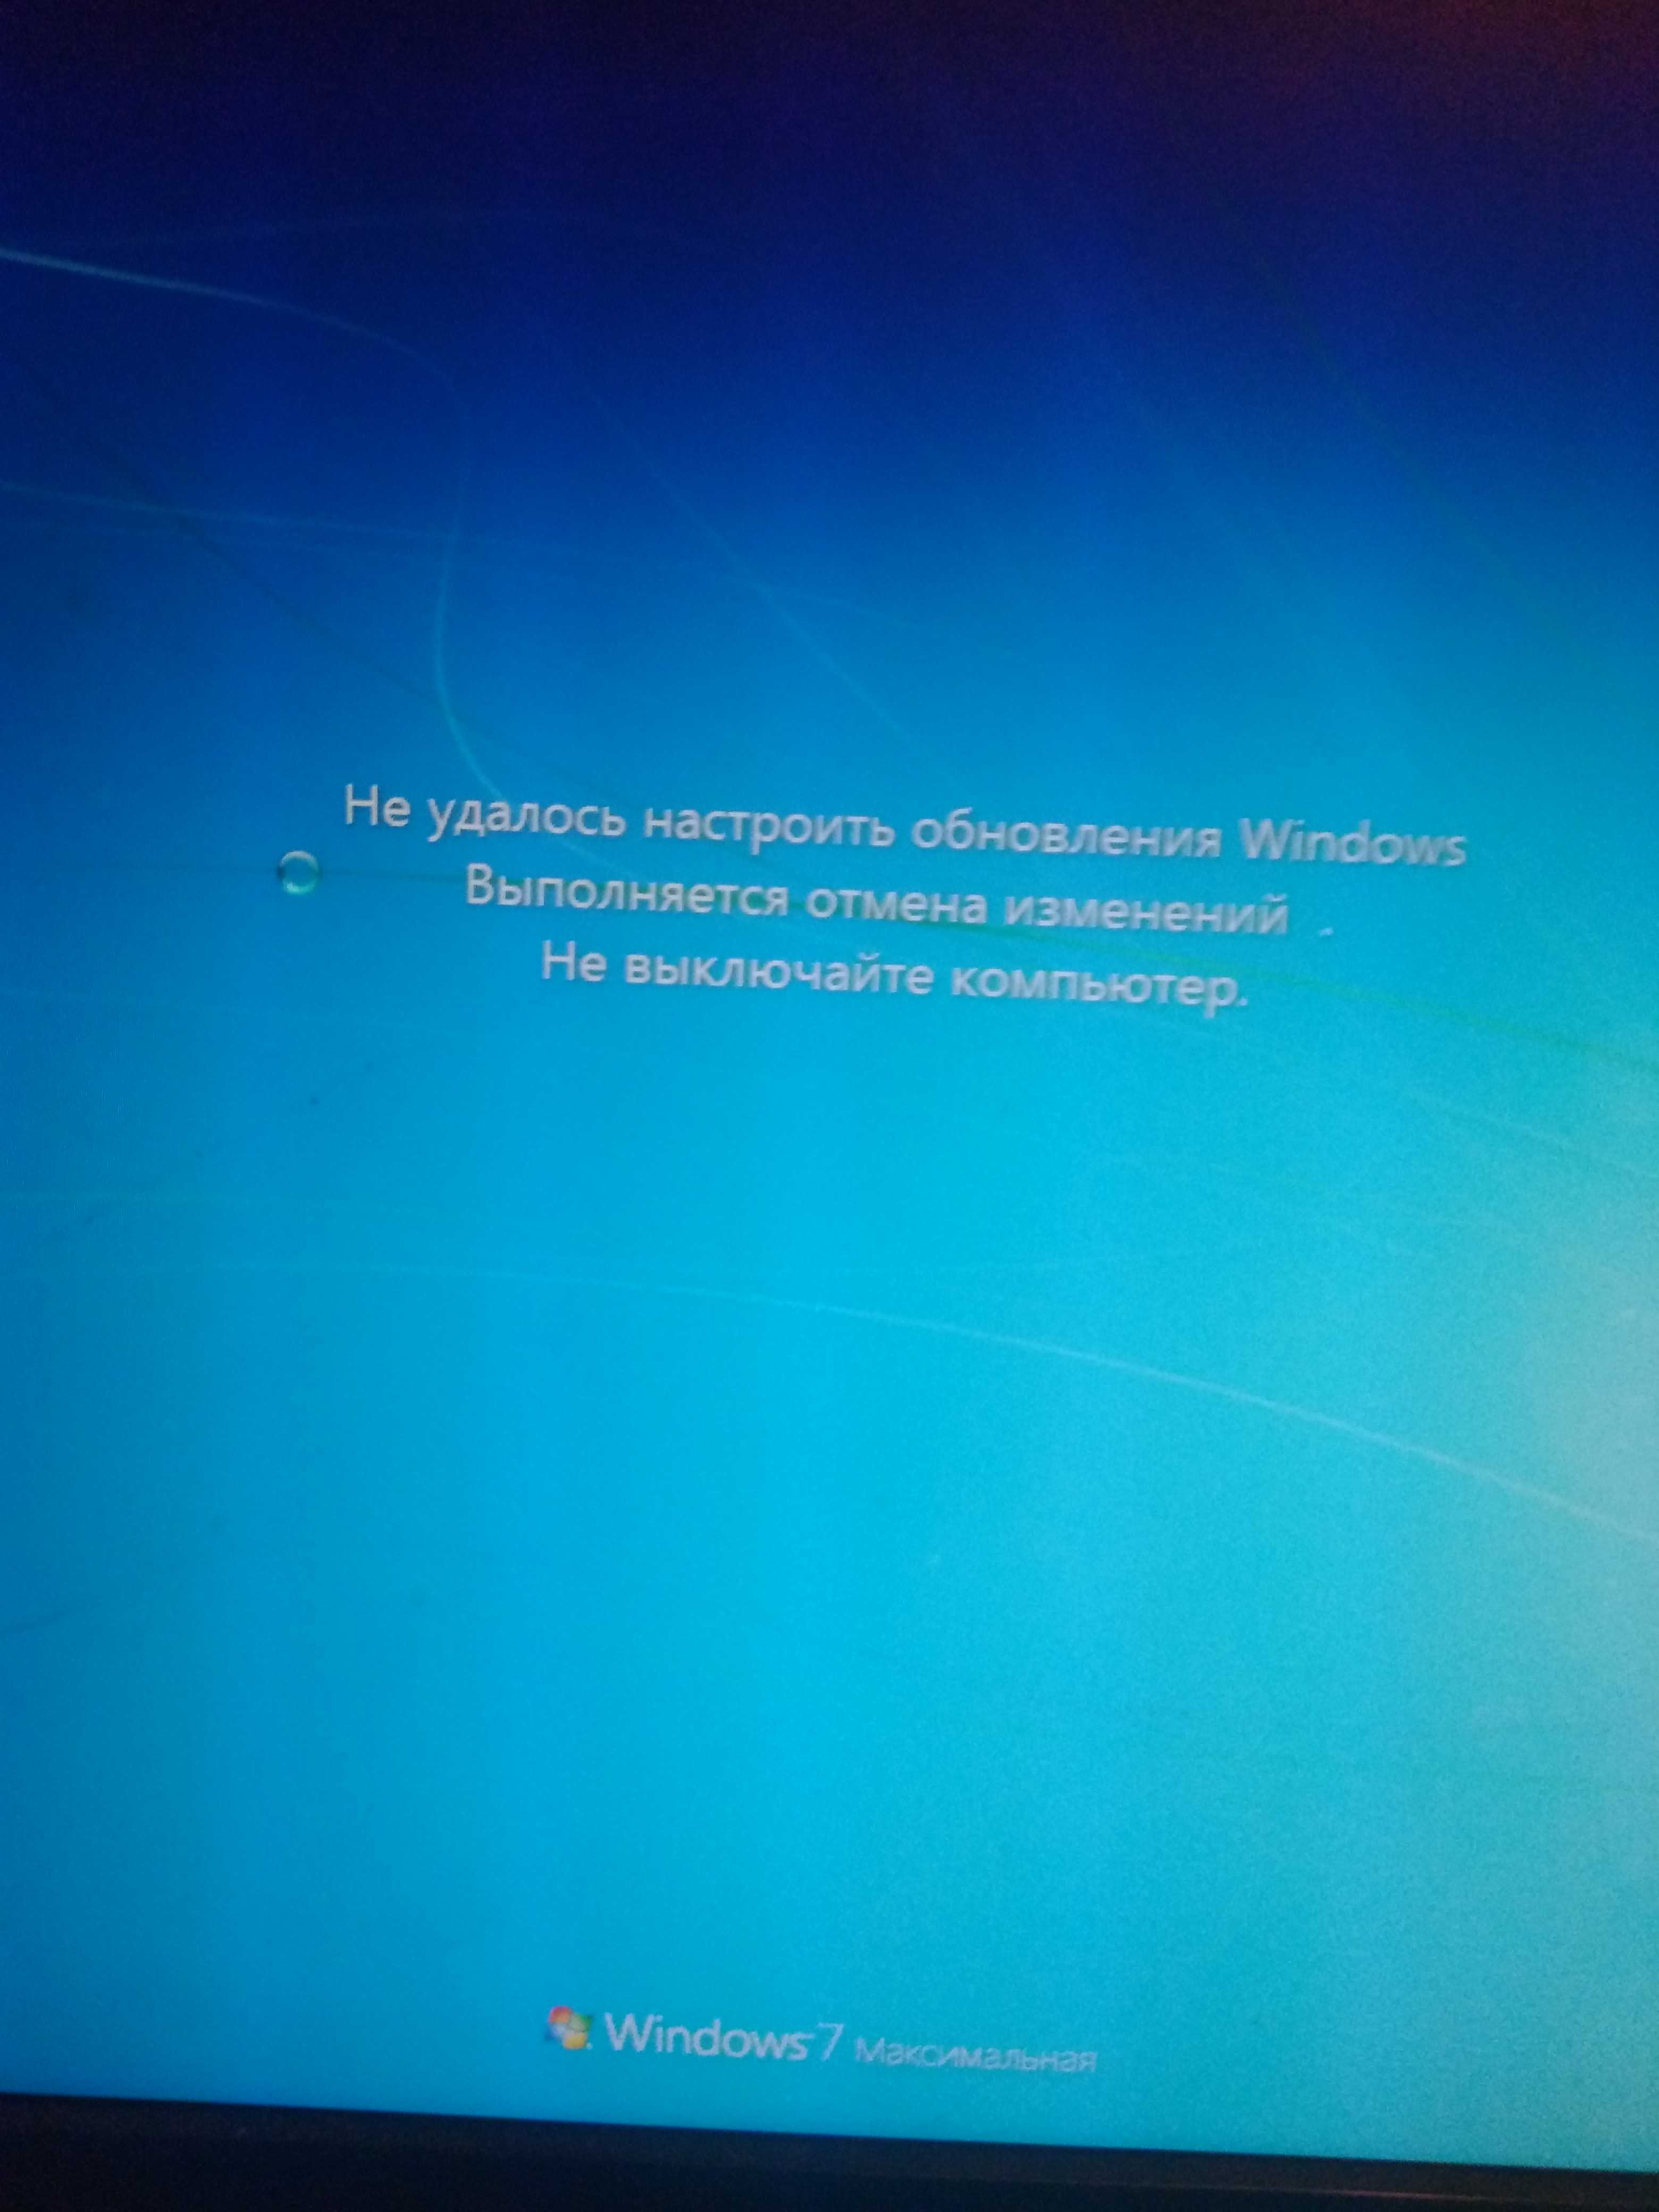 Выполняется отмена изменений. Обновление виндовс не выключайте компьютер. Обновление Windows не выключайте компьютер. Подготовка виндовс не выключайте компьютер. Работа с обновлениями.